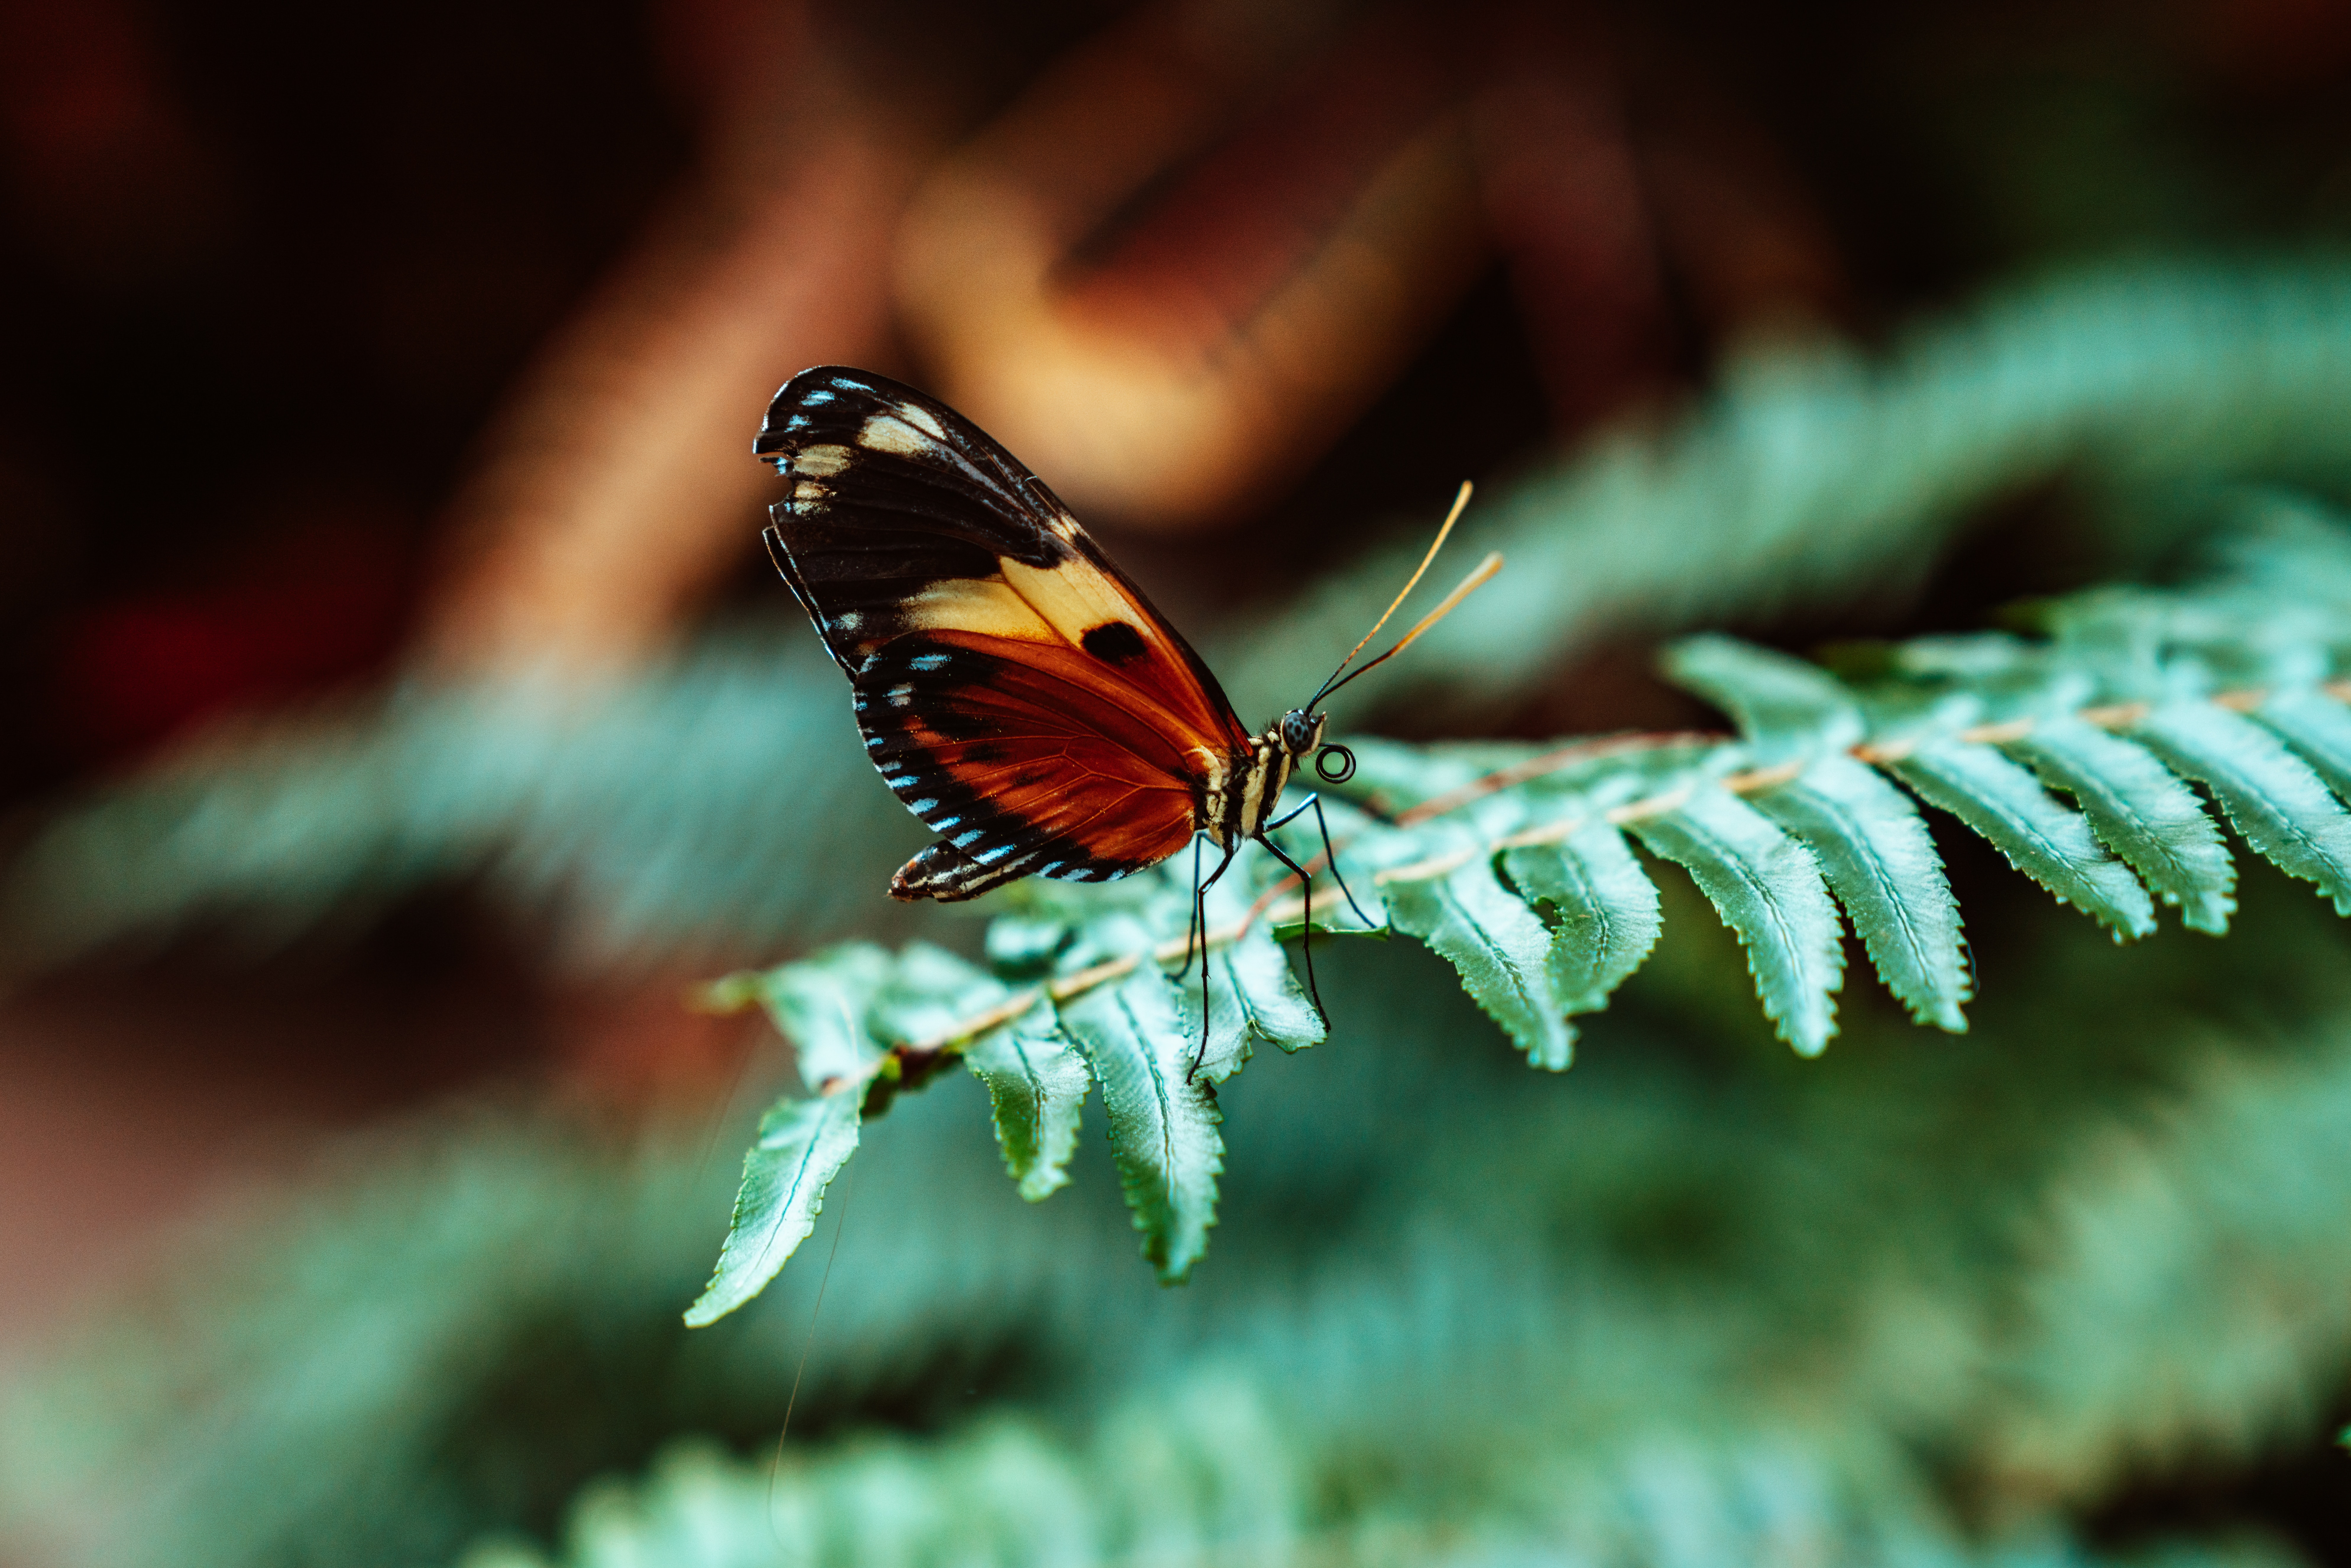 Бабочка Лист Фото